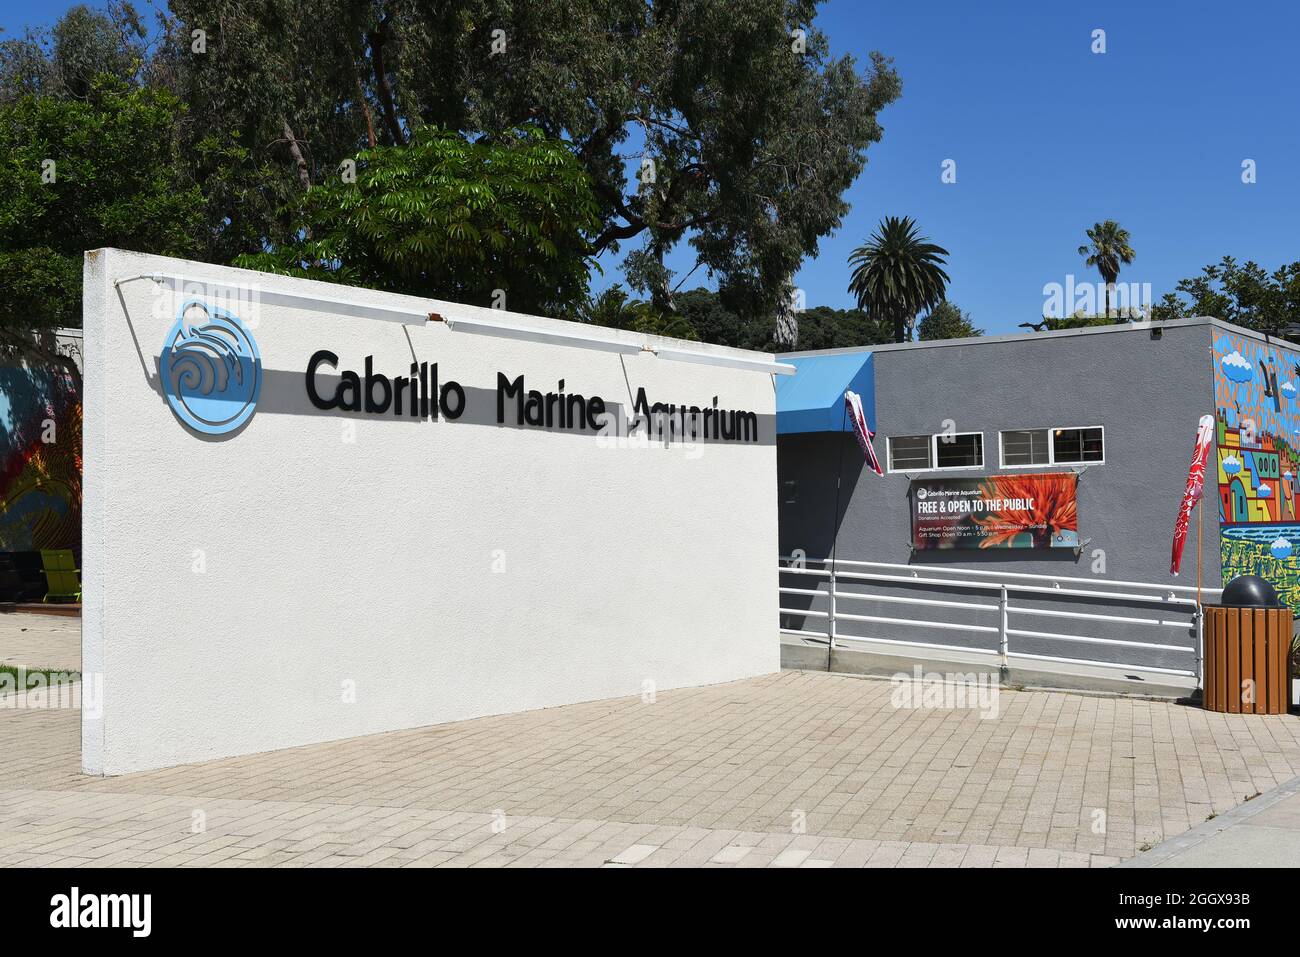 SAN PEDRO, KALIFORNIEN - 27. AUG 2021: Das Cabrillo Marine Aquarium verfügt über Ausstellungsräume im Innen- und Außenbereich, ein Auditorium und Nasslabore. Stockfoto